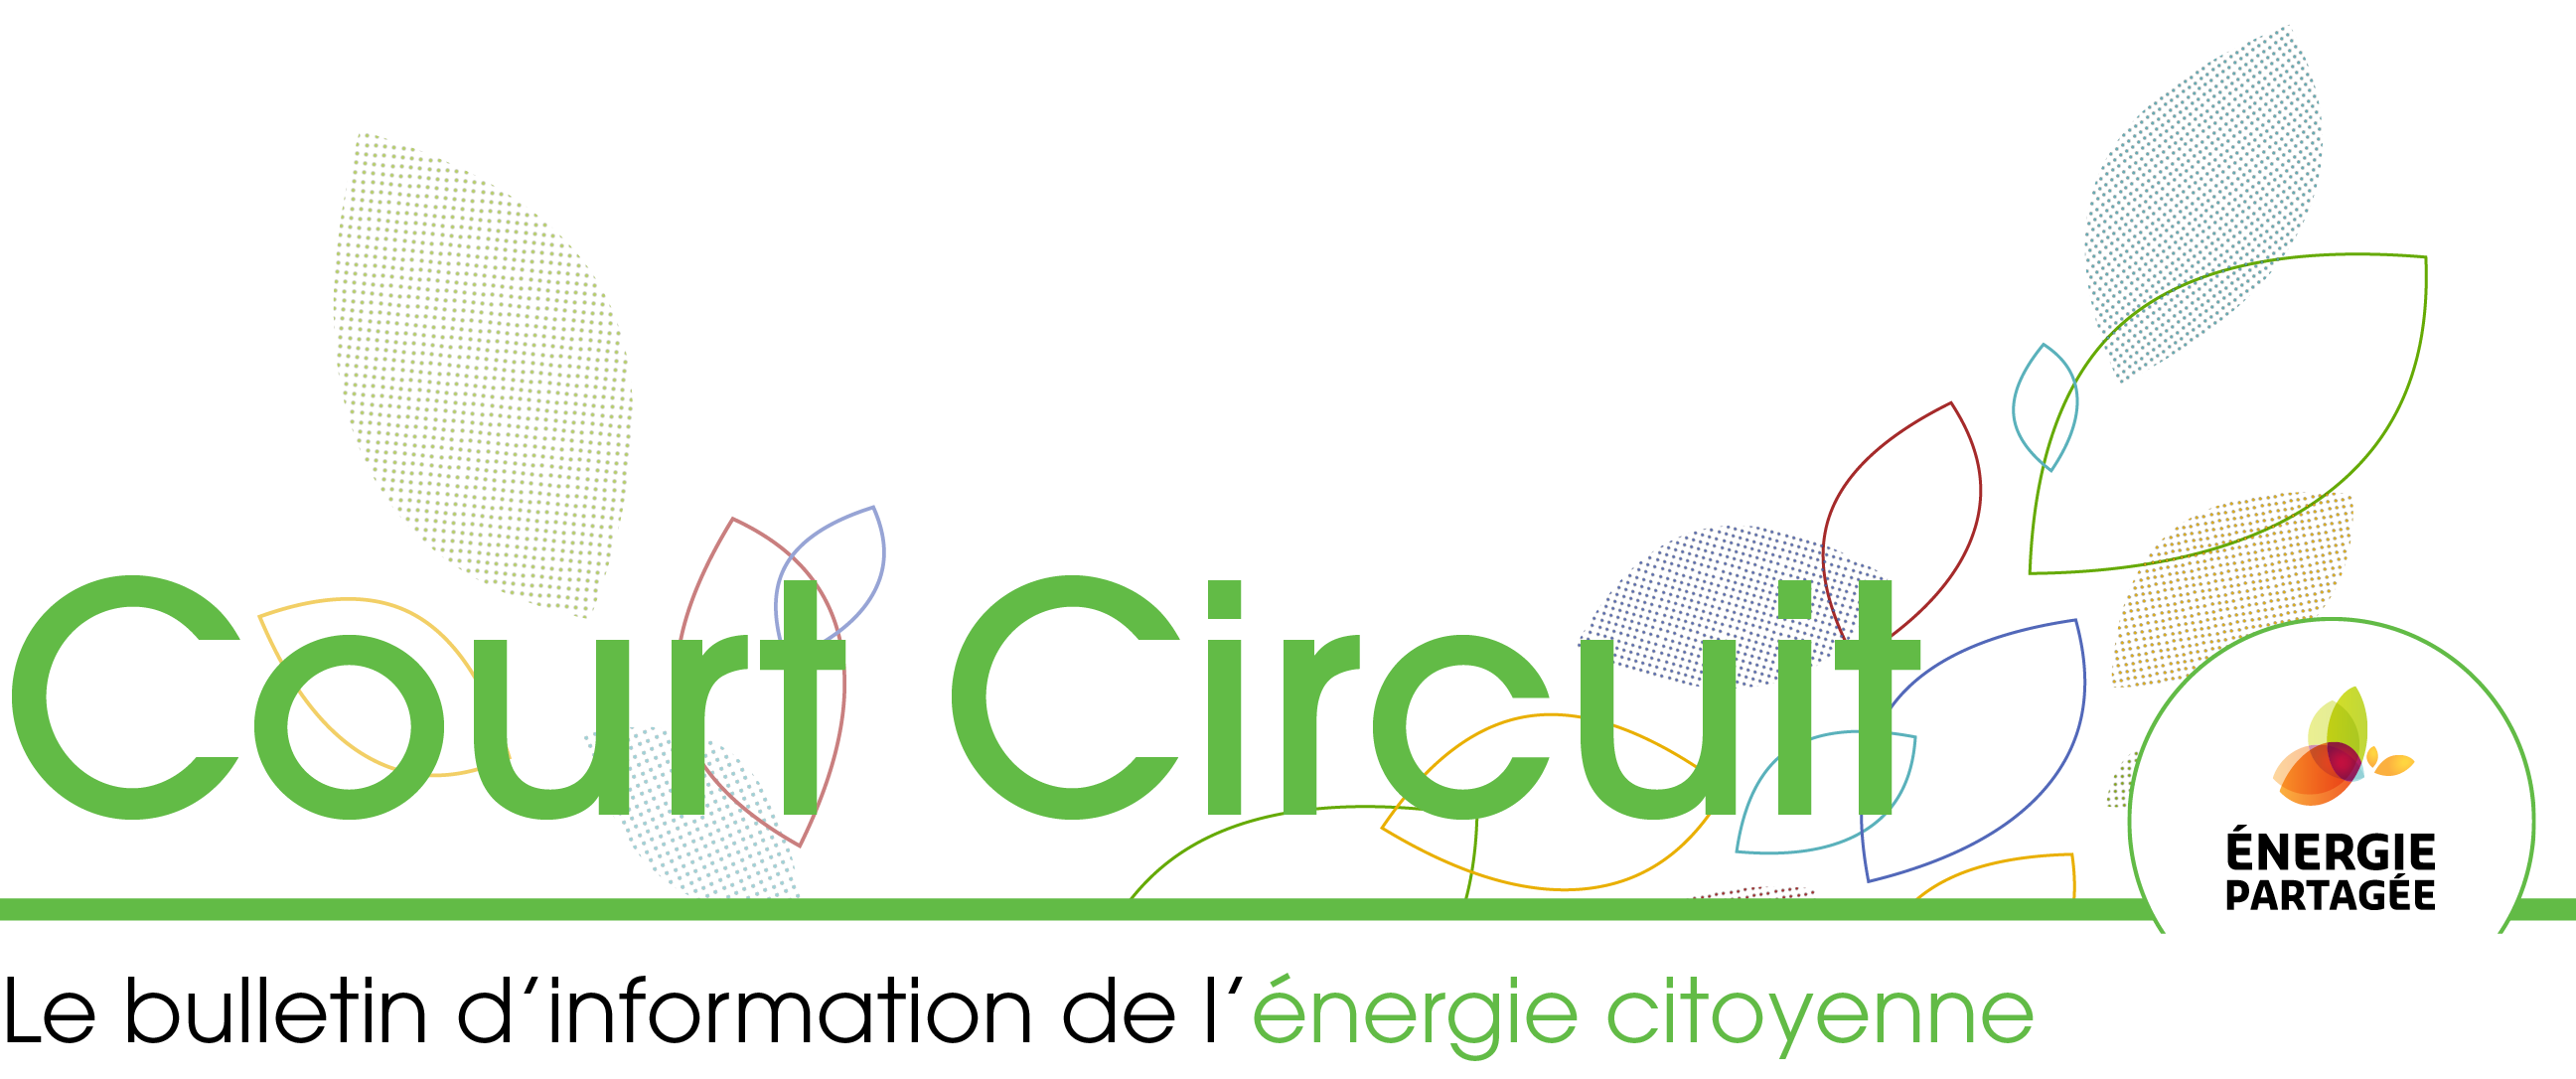 Court Circuit - Le bulletin d’information de l’énergie citoyenne